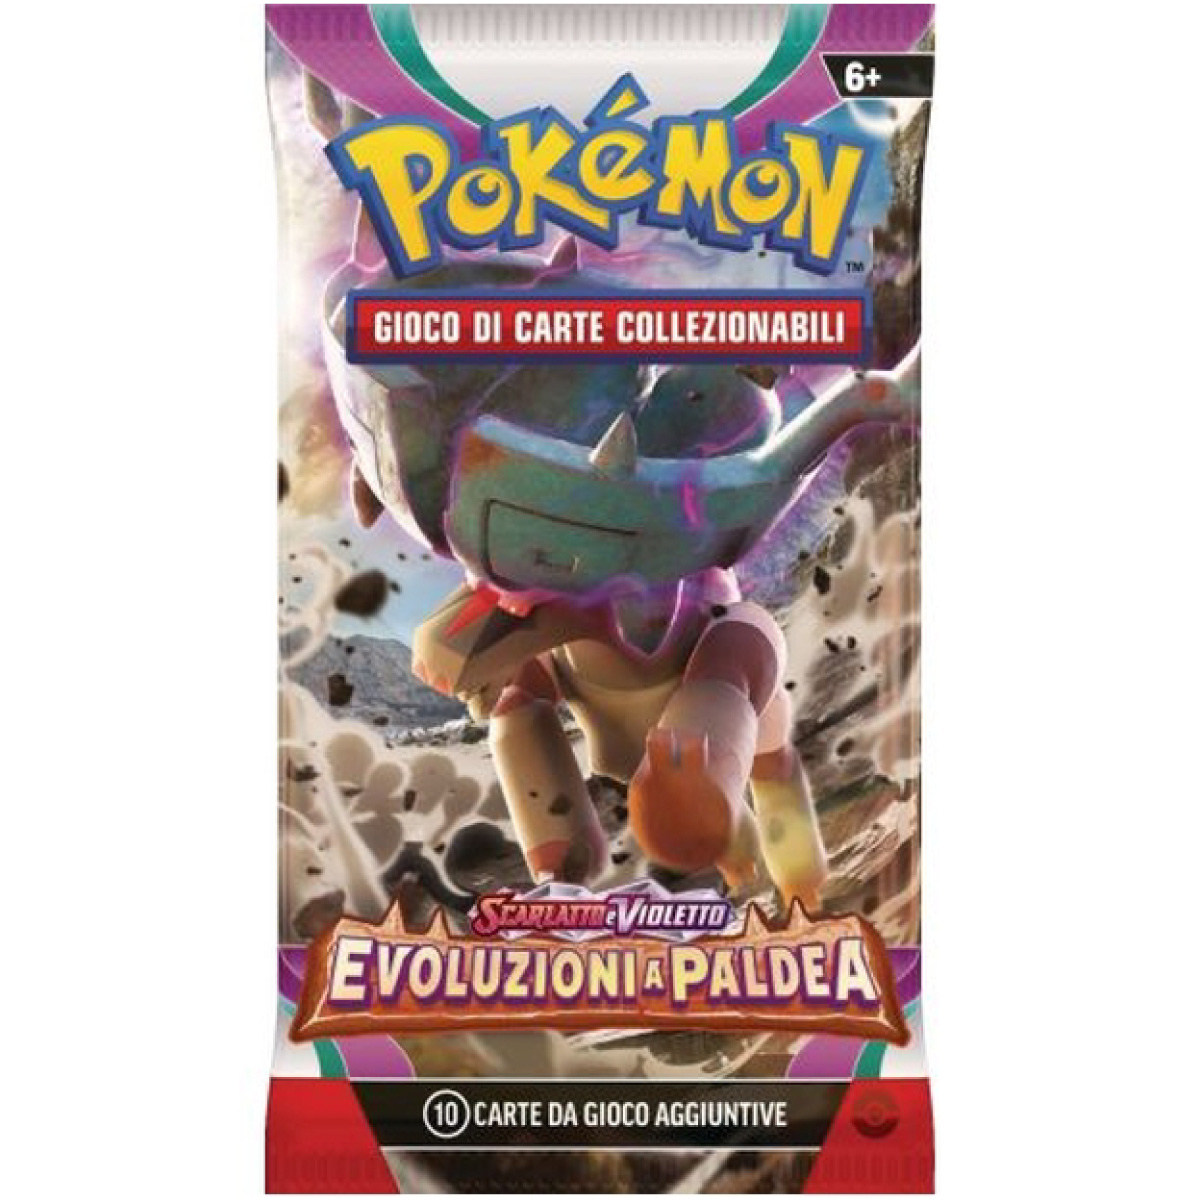 pokemon gcc - pokemon scarlatto e violetto evoluzioni a paldea - case sigillato 6x box da 36 bustine (ita) - pk62331